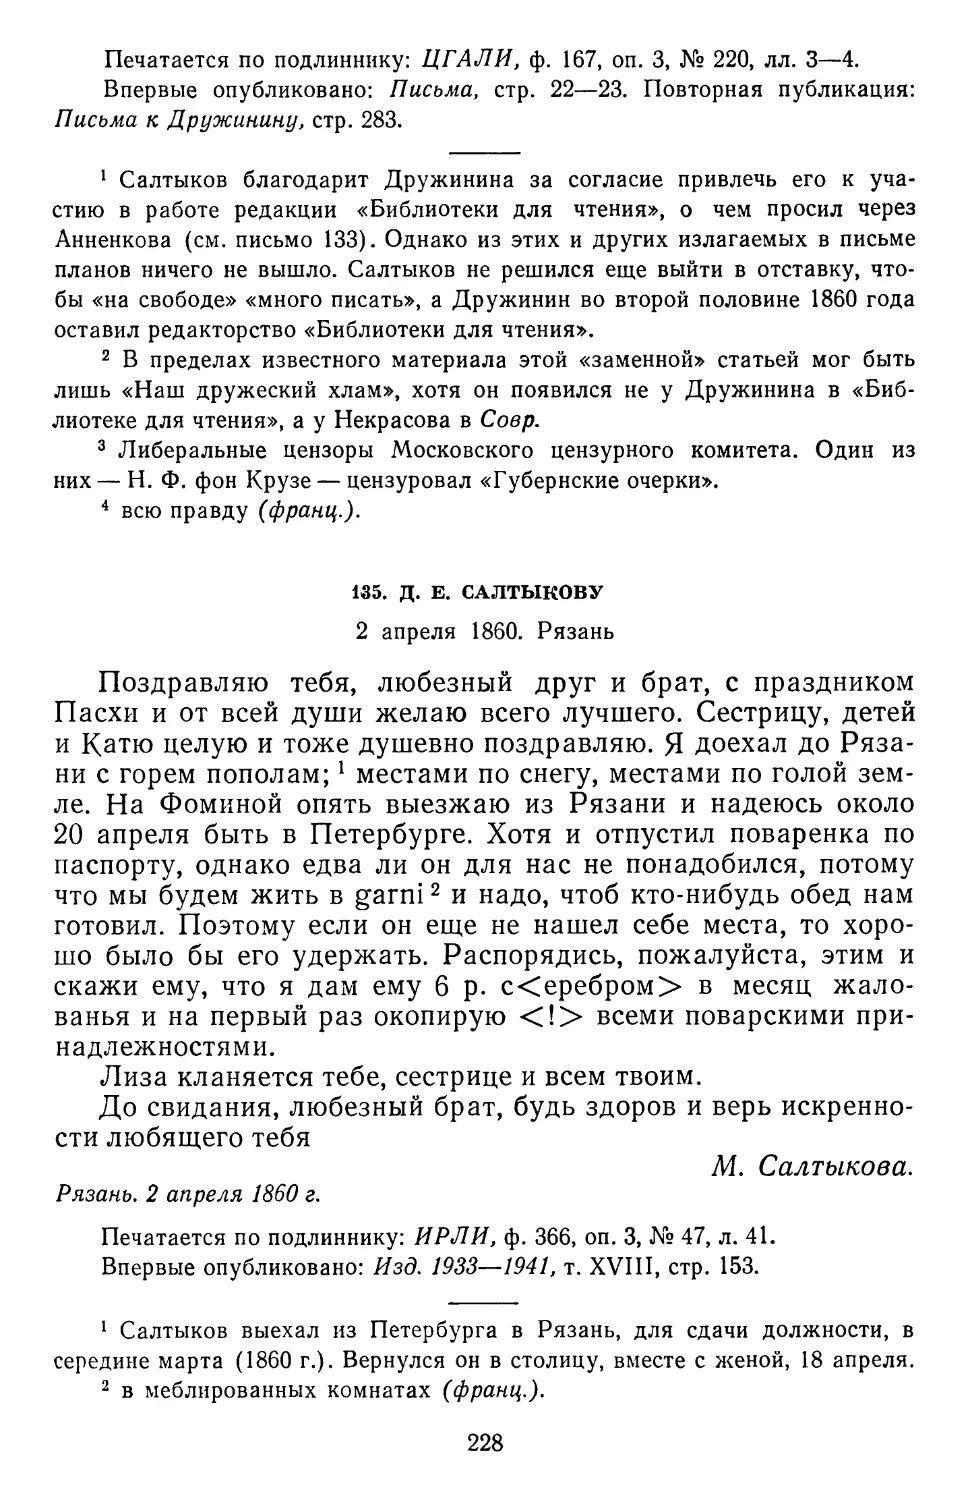 135.Д. Е. Салтыкову. 2 апреля 1860. Рязань